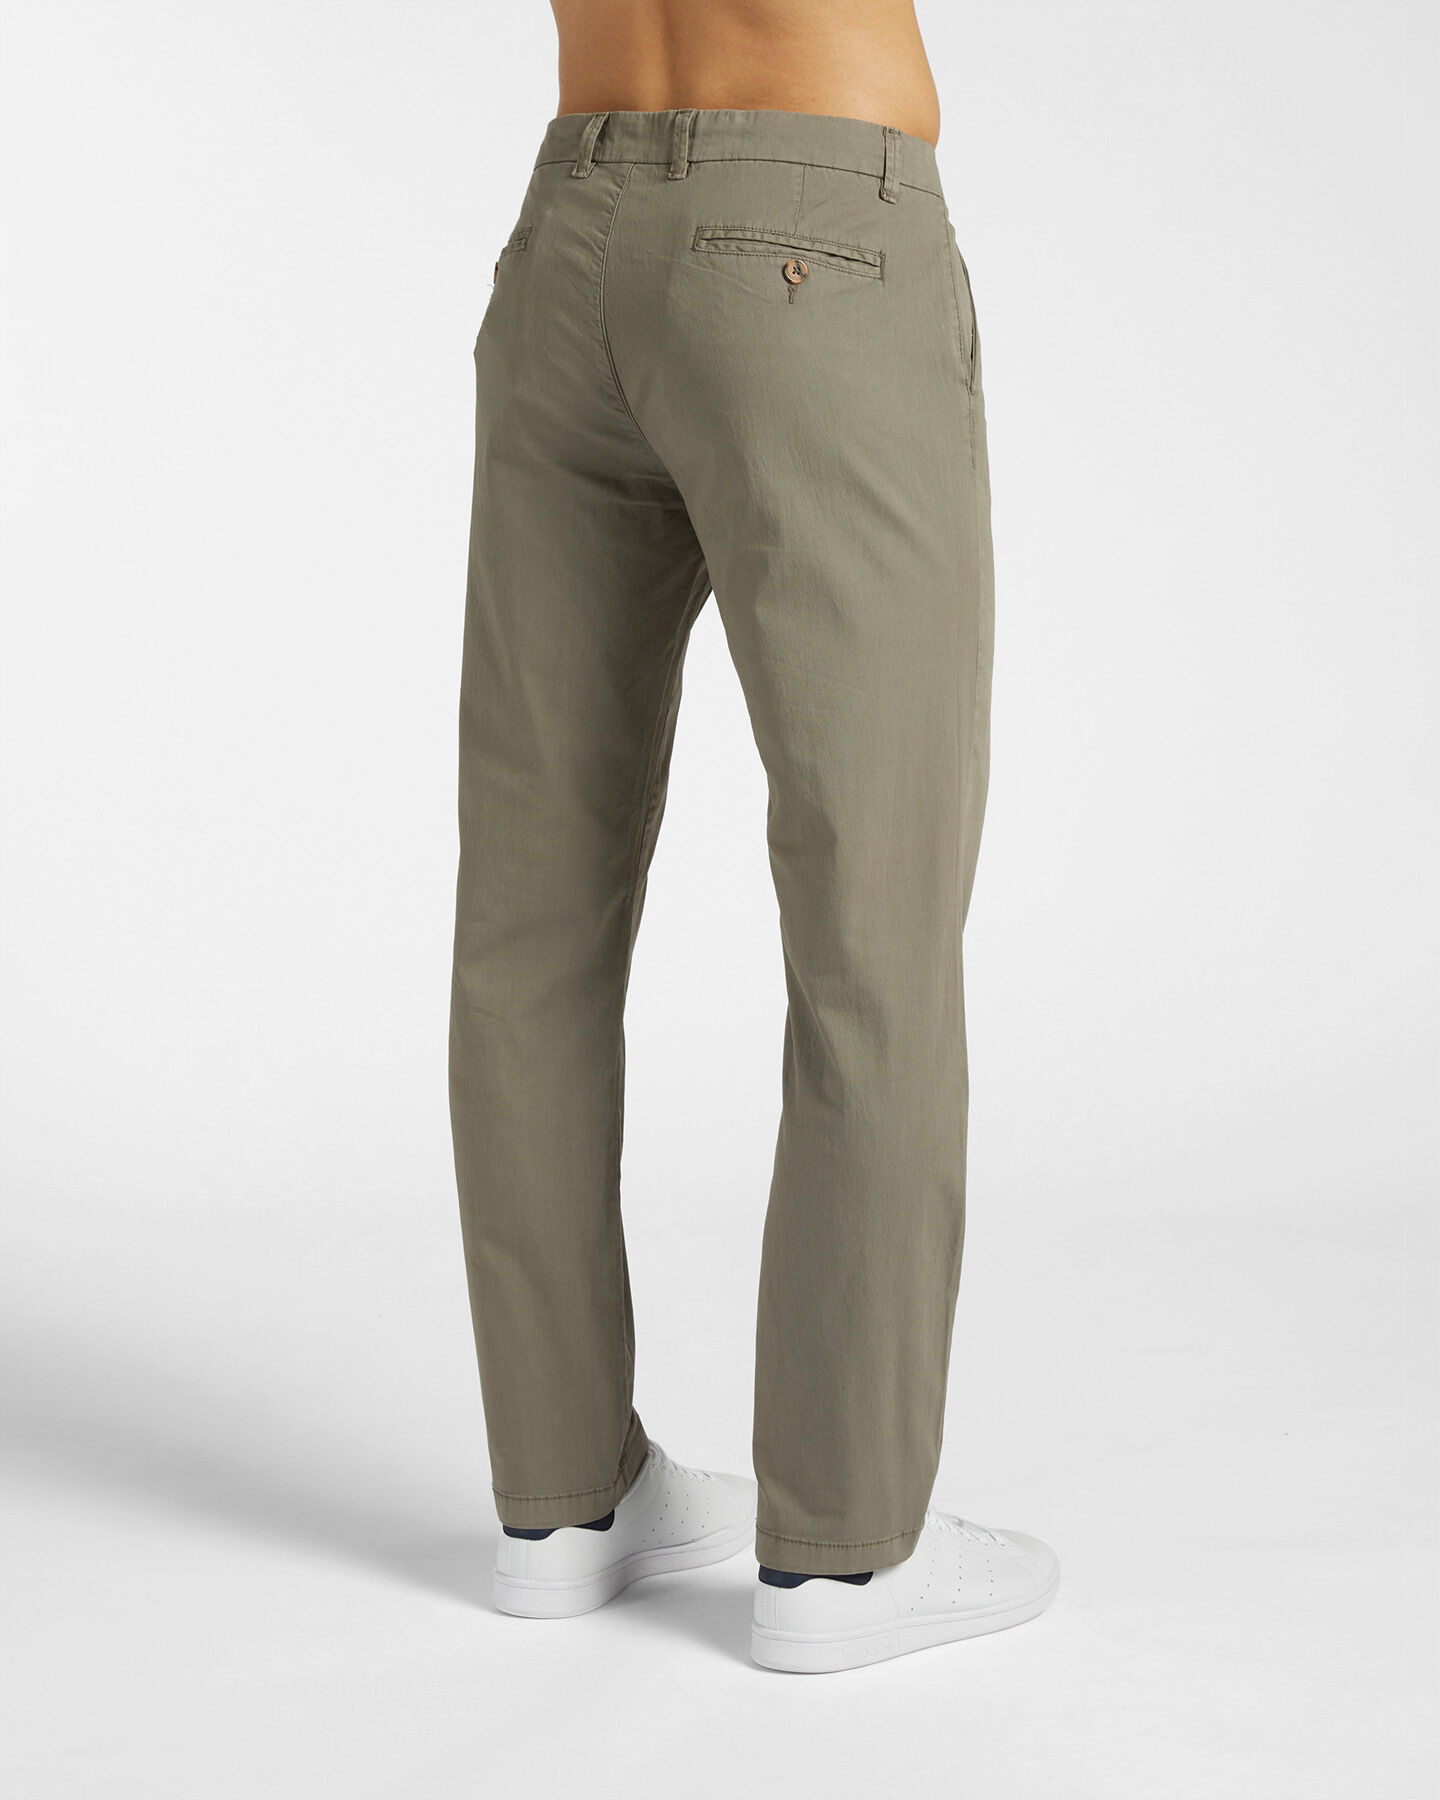  Pantalone DACK'S URBAN CITY M S4118695|842|48 scatto 1